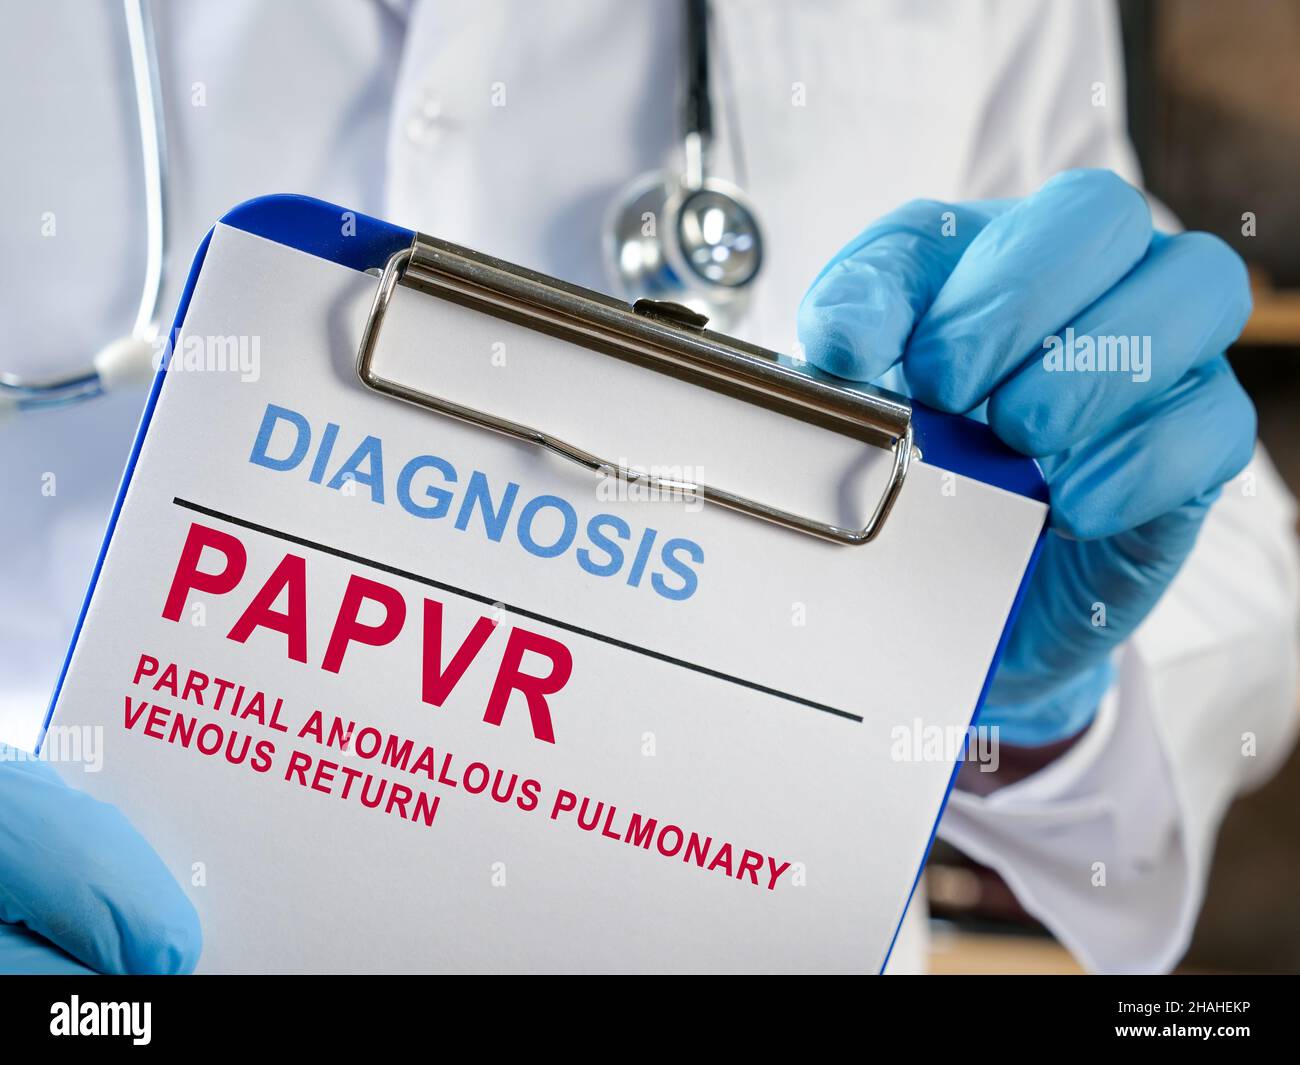 Doctor shows diagnosis PAPVR Partial anomalous pulmonary venous return. Stock Photo